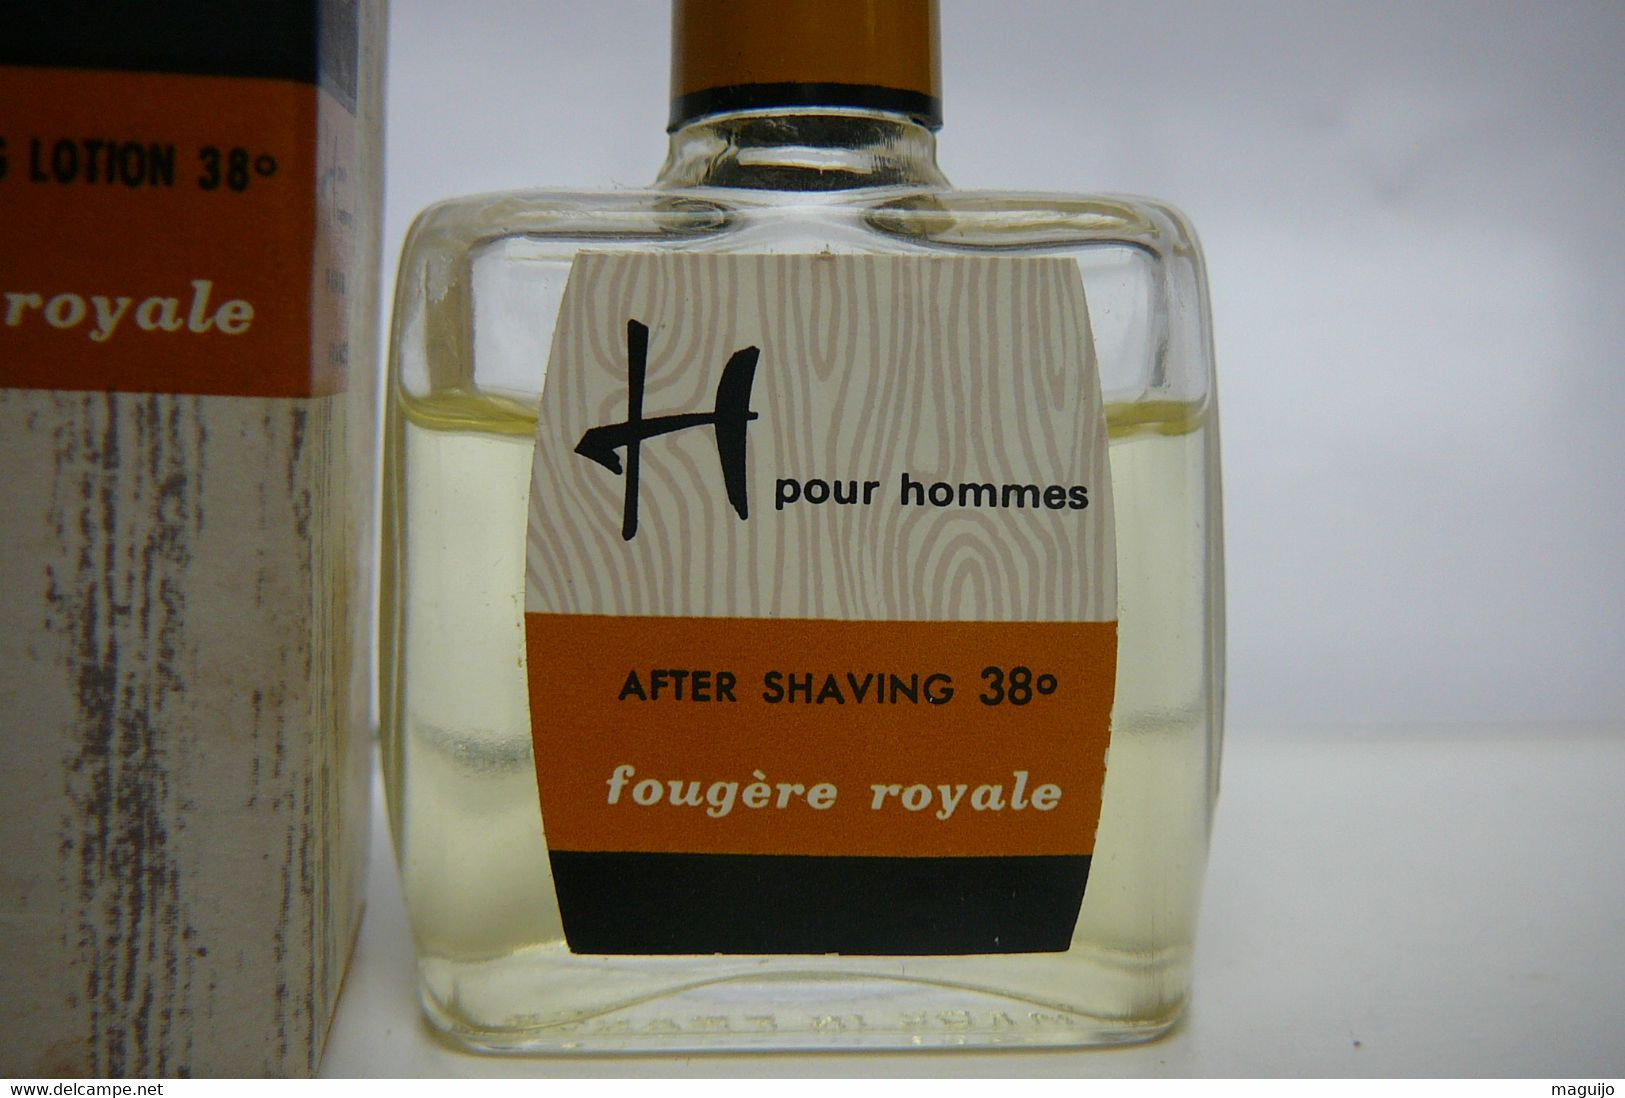 H Pour Hommes " FOUGERE ROYALE" AFTER SHAVING LOTION 38 ° 6 ML LIRE ET VOIR!! - Miniatures Men's Fragrances (in Box)